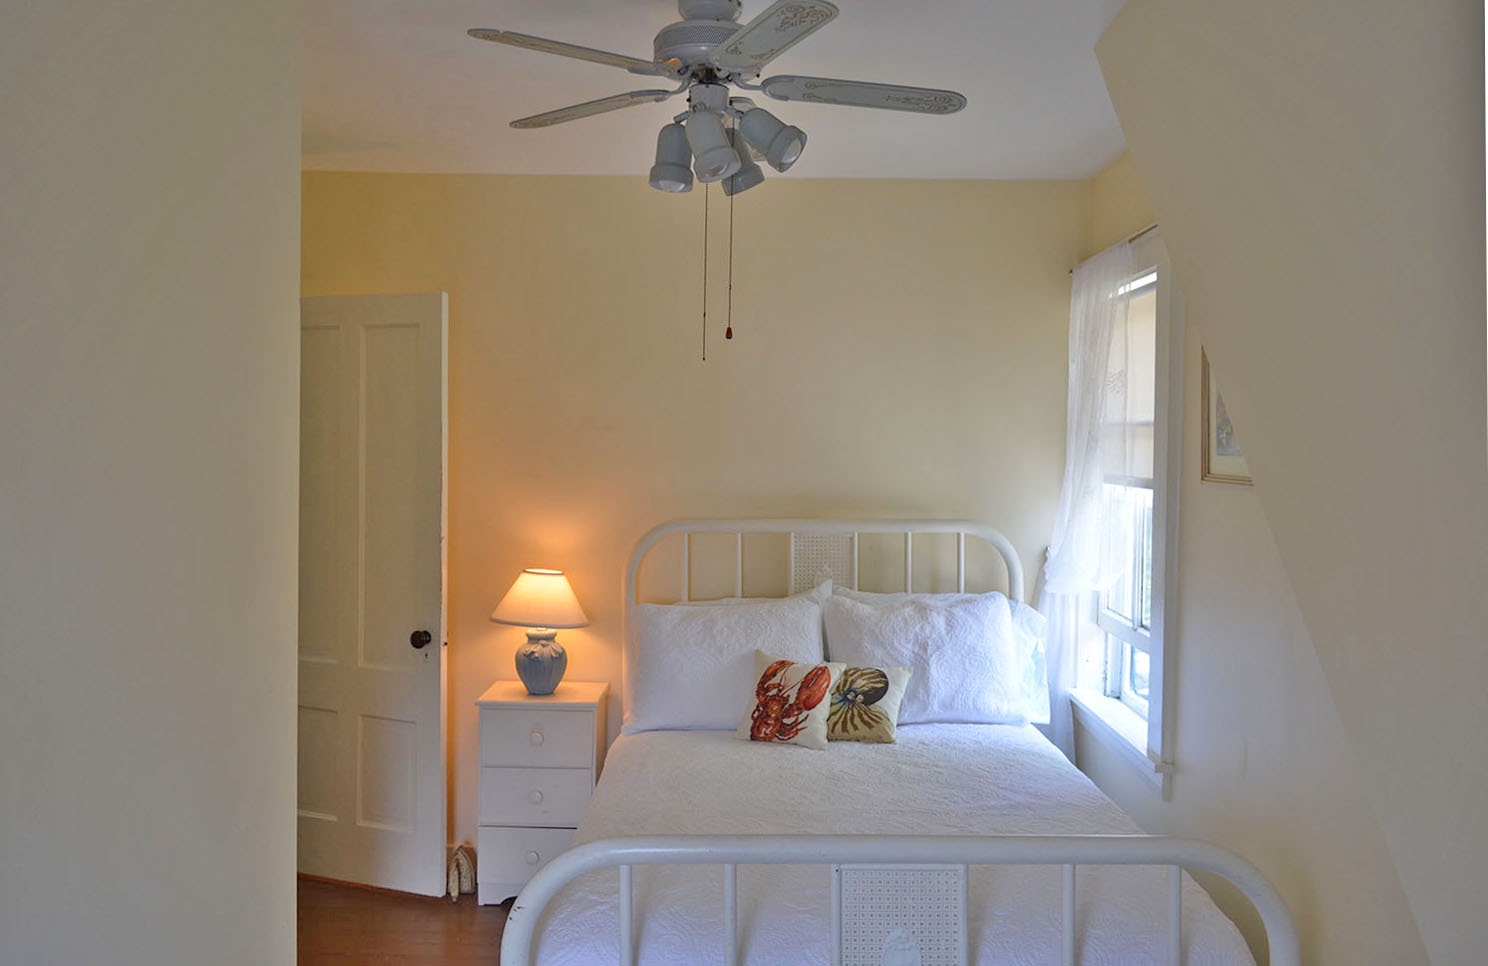 Bedroom 2: Double bed & ceiling fan.